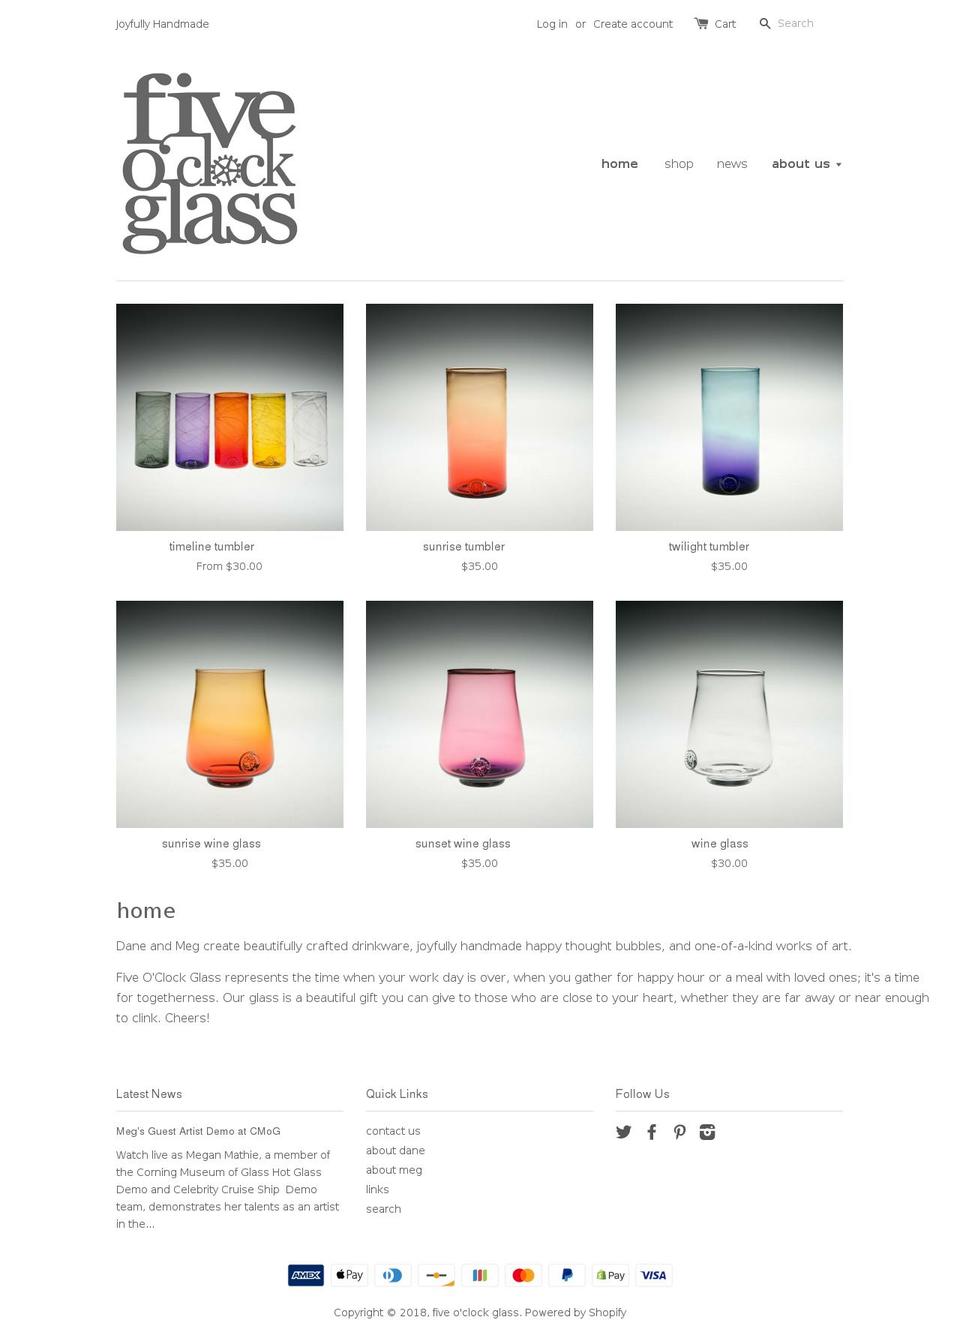 5oclockglass.com shopify website screenshot